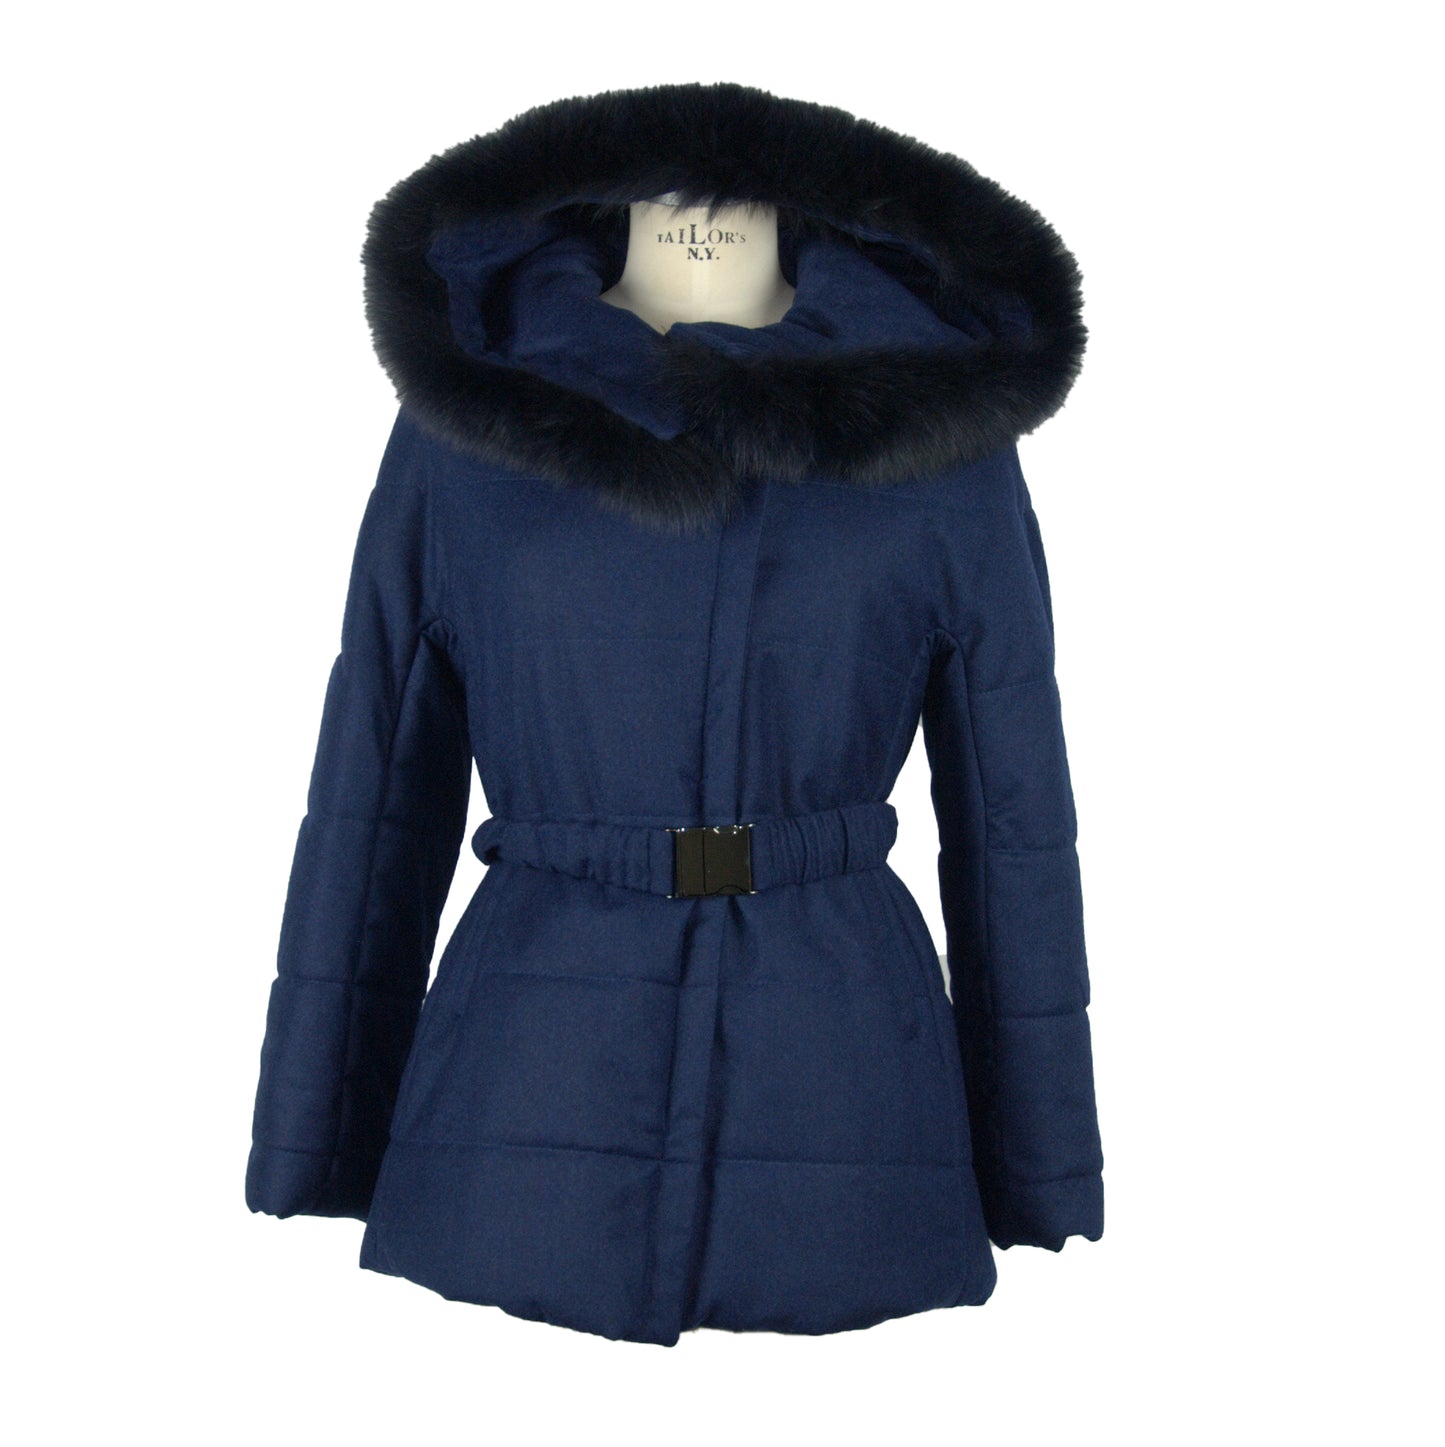 Blue Wool & Fur Hooded Jacket Coat